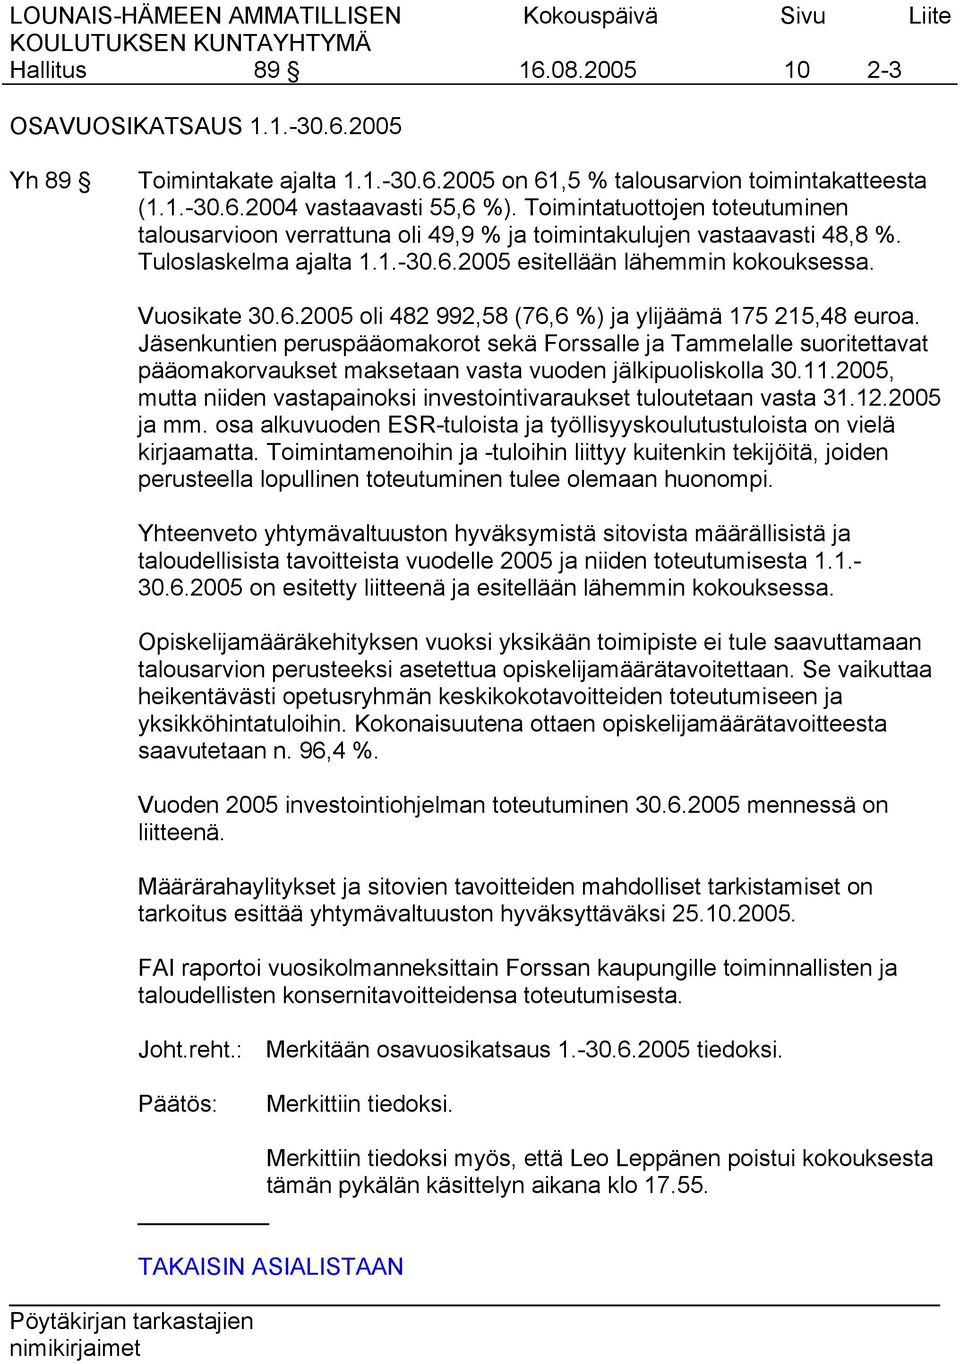 Jäsenkuntien peruspääomakorot sekä Forssalle ja Tammelalle suoritettavat pääomakorvaukset maksetaan vasta vuoden jälkipuoliskolla 30.11.